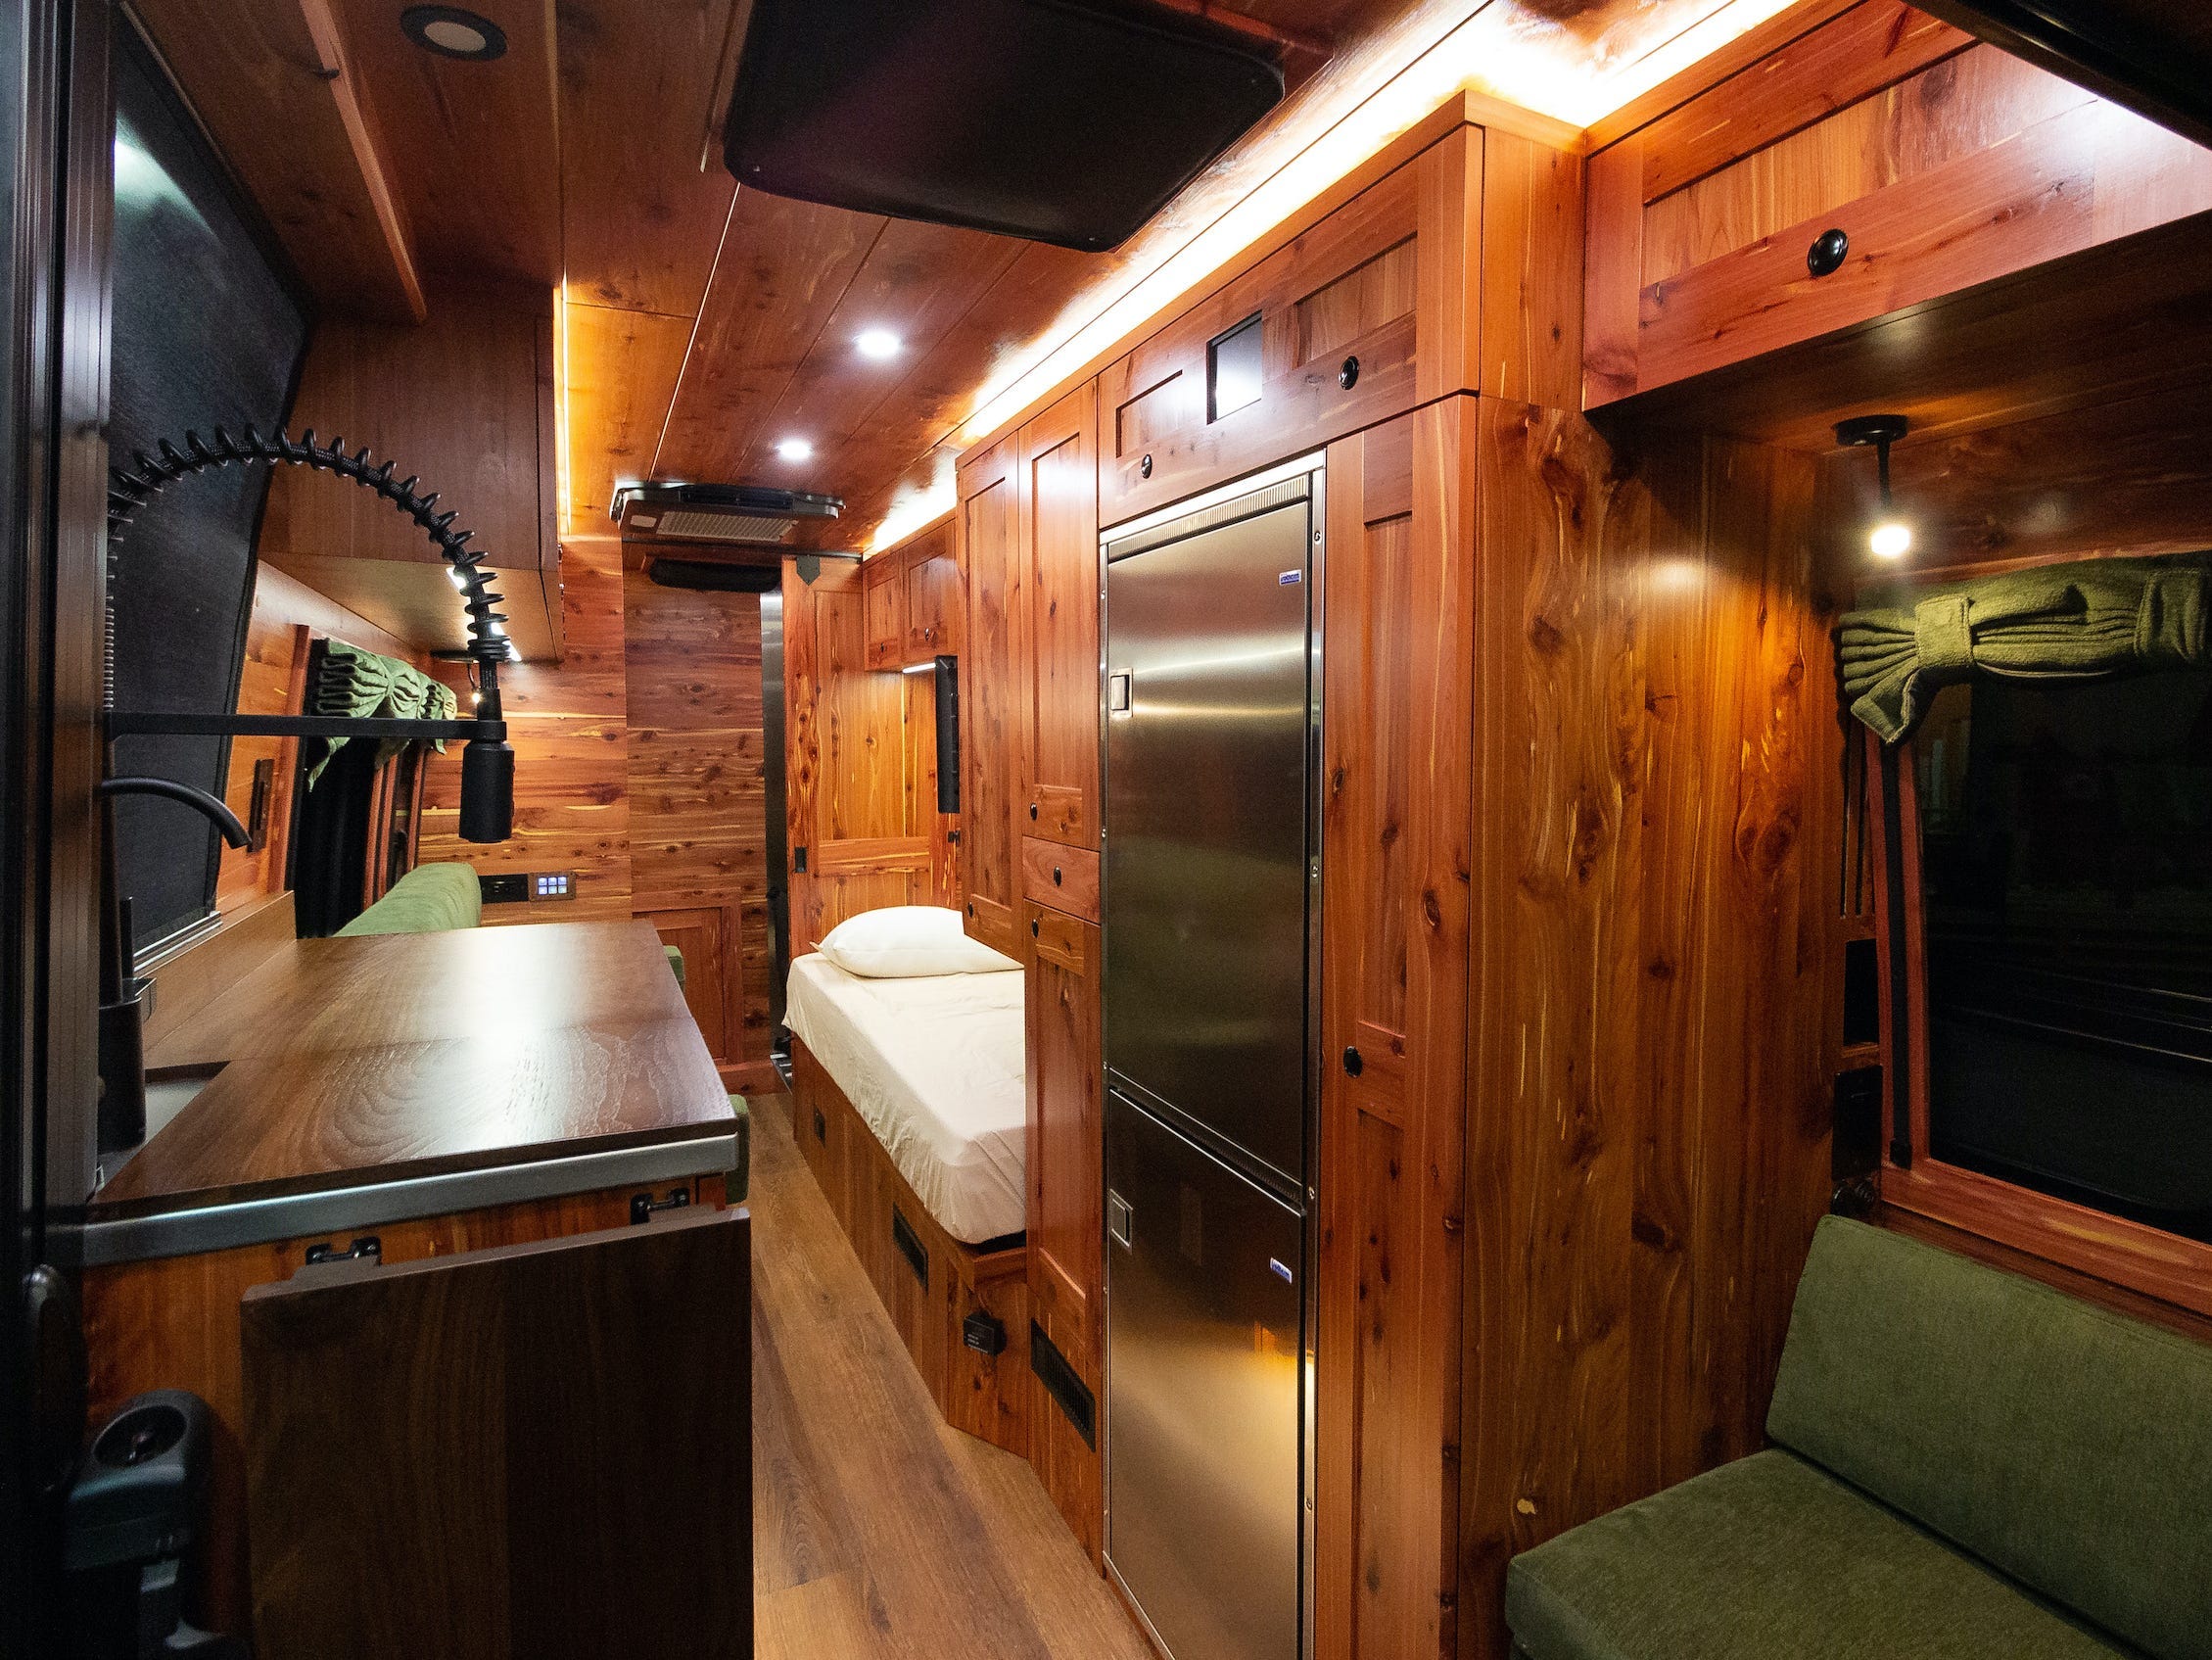 Eine weite Ansicht des Innenraums des Lieferwagens mit Sitz, Küche und Bett.  Der Innenraum ist mit dunklem Holz ausgekleidet.